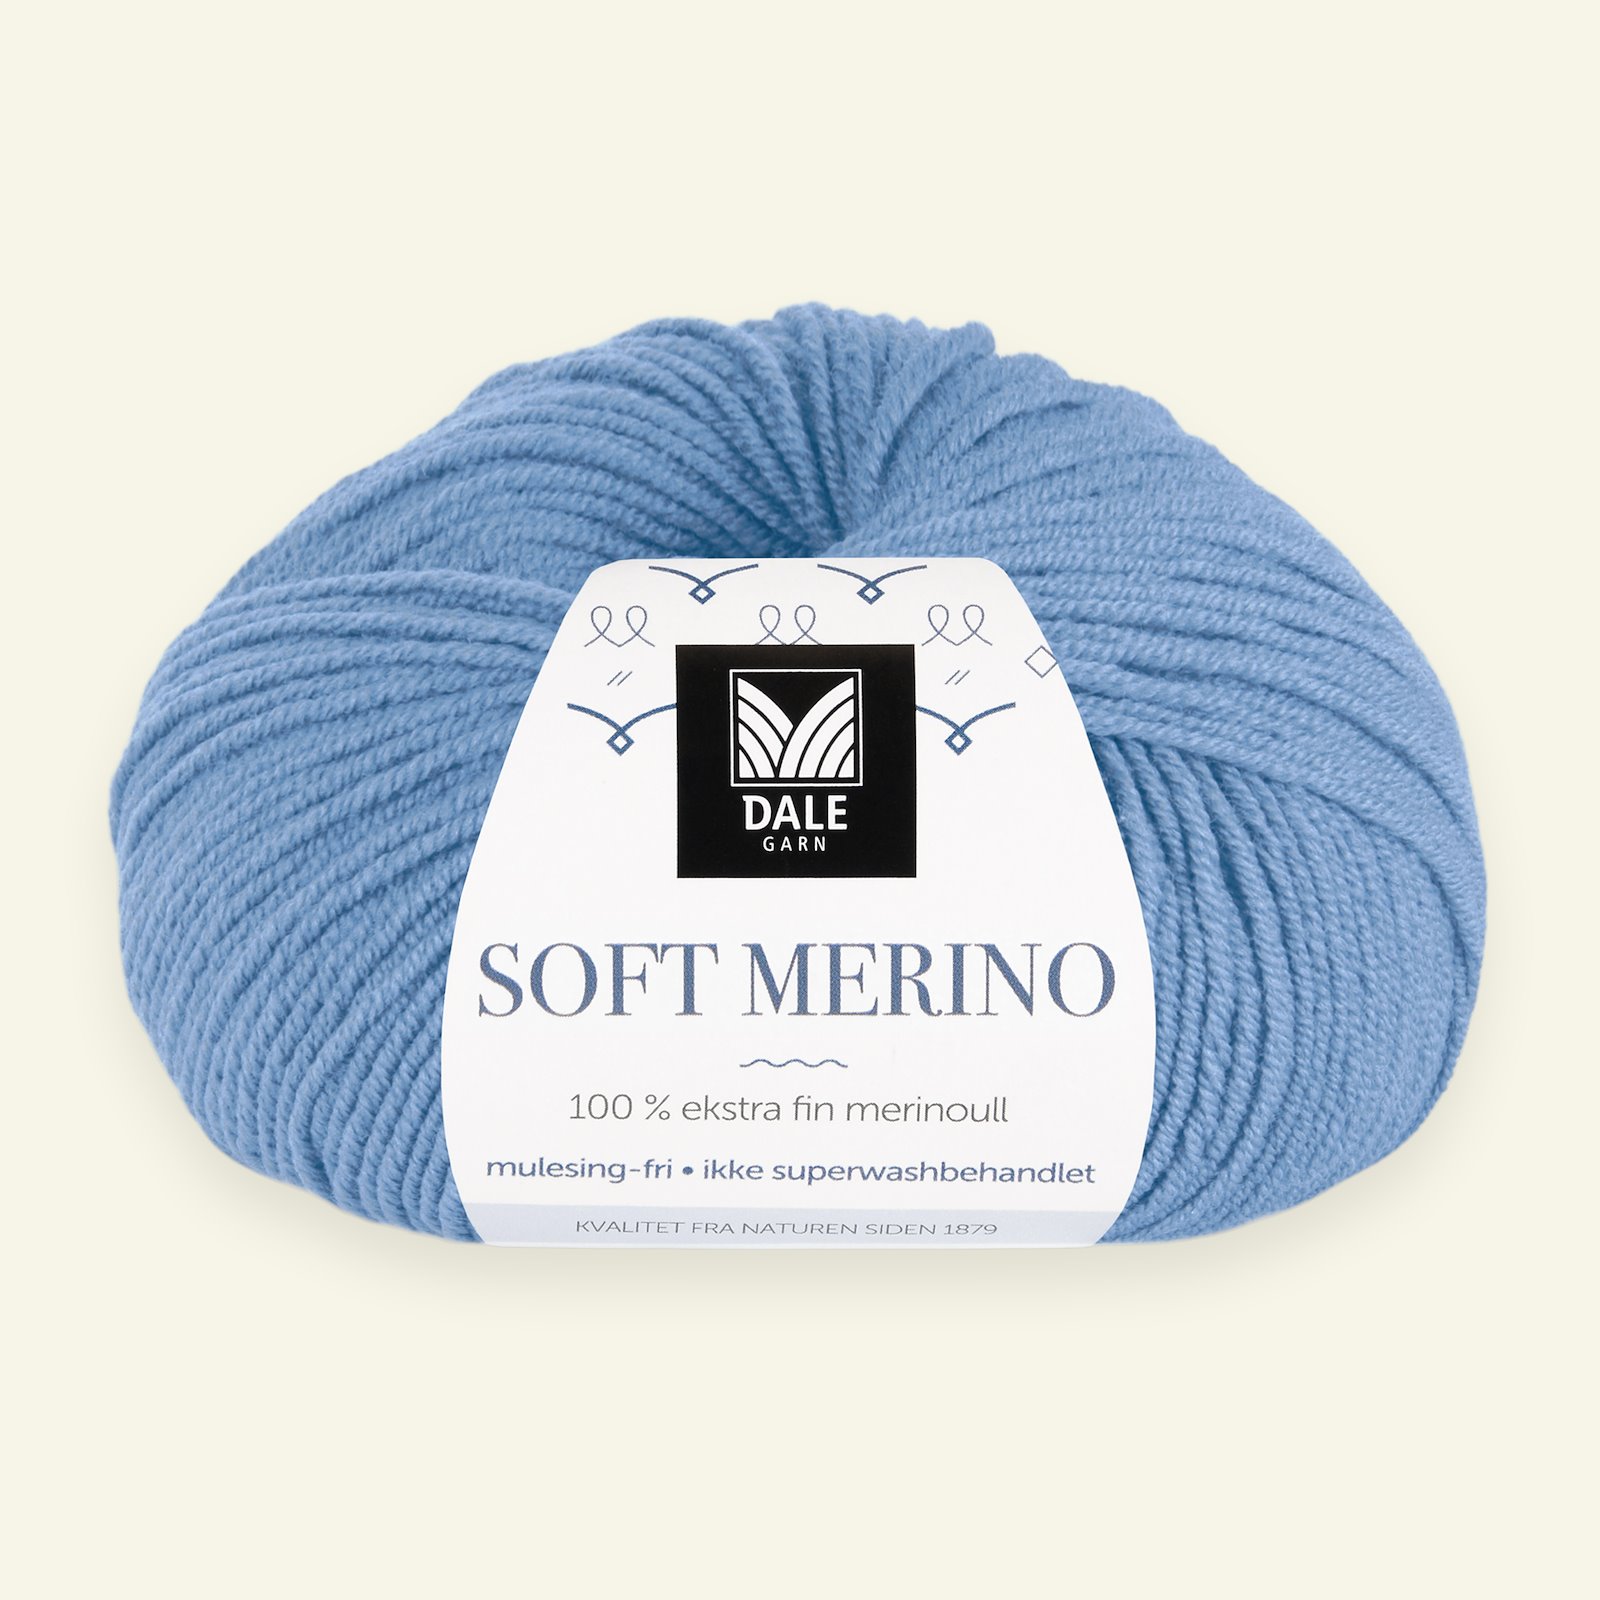 Dale Garn, 100% ekstra fint merinogarn "Soft Merino", blå (3027) 90000348_pack